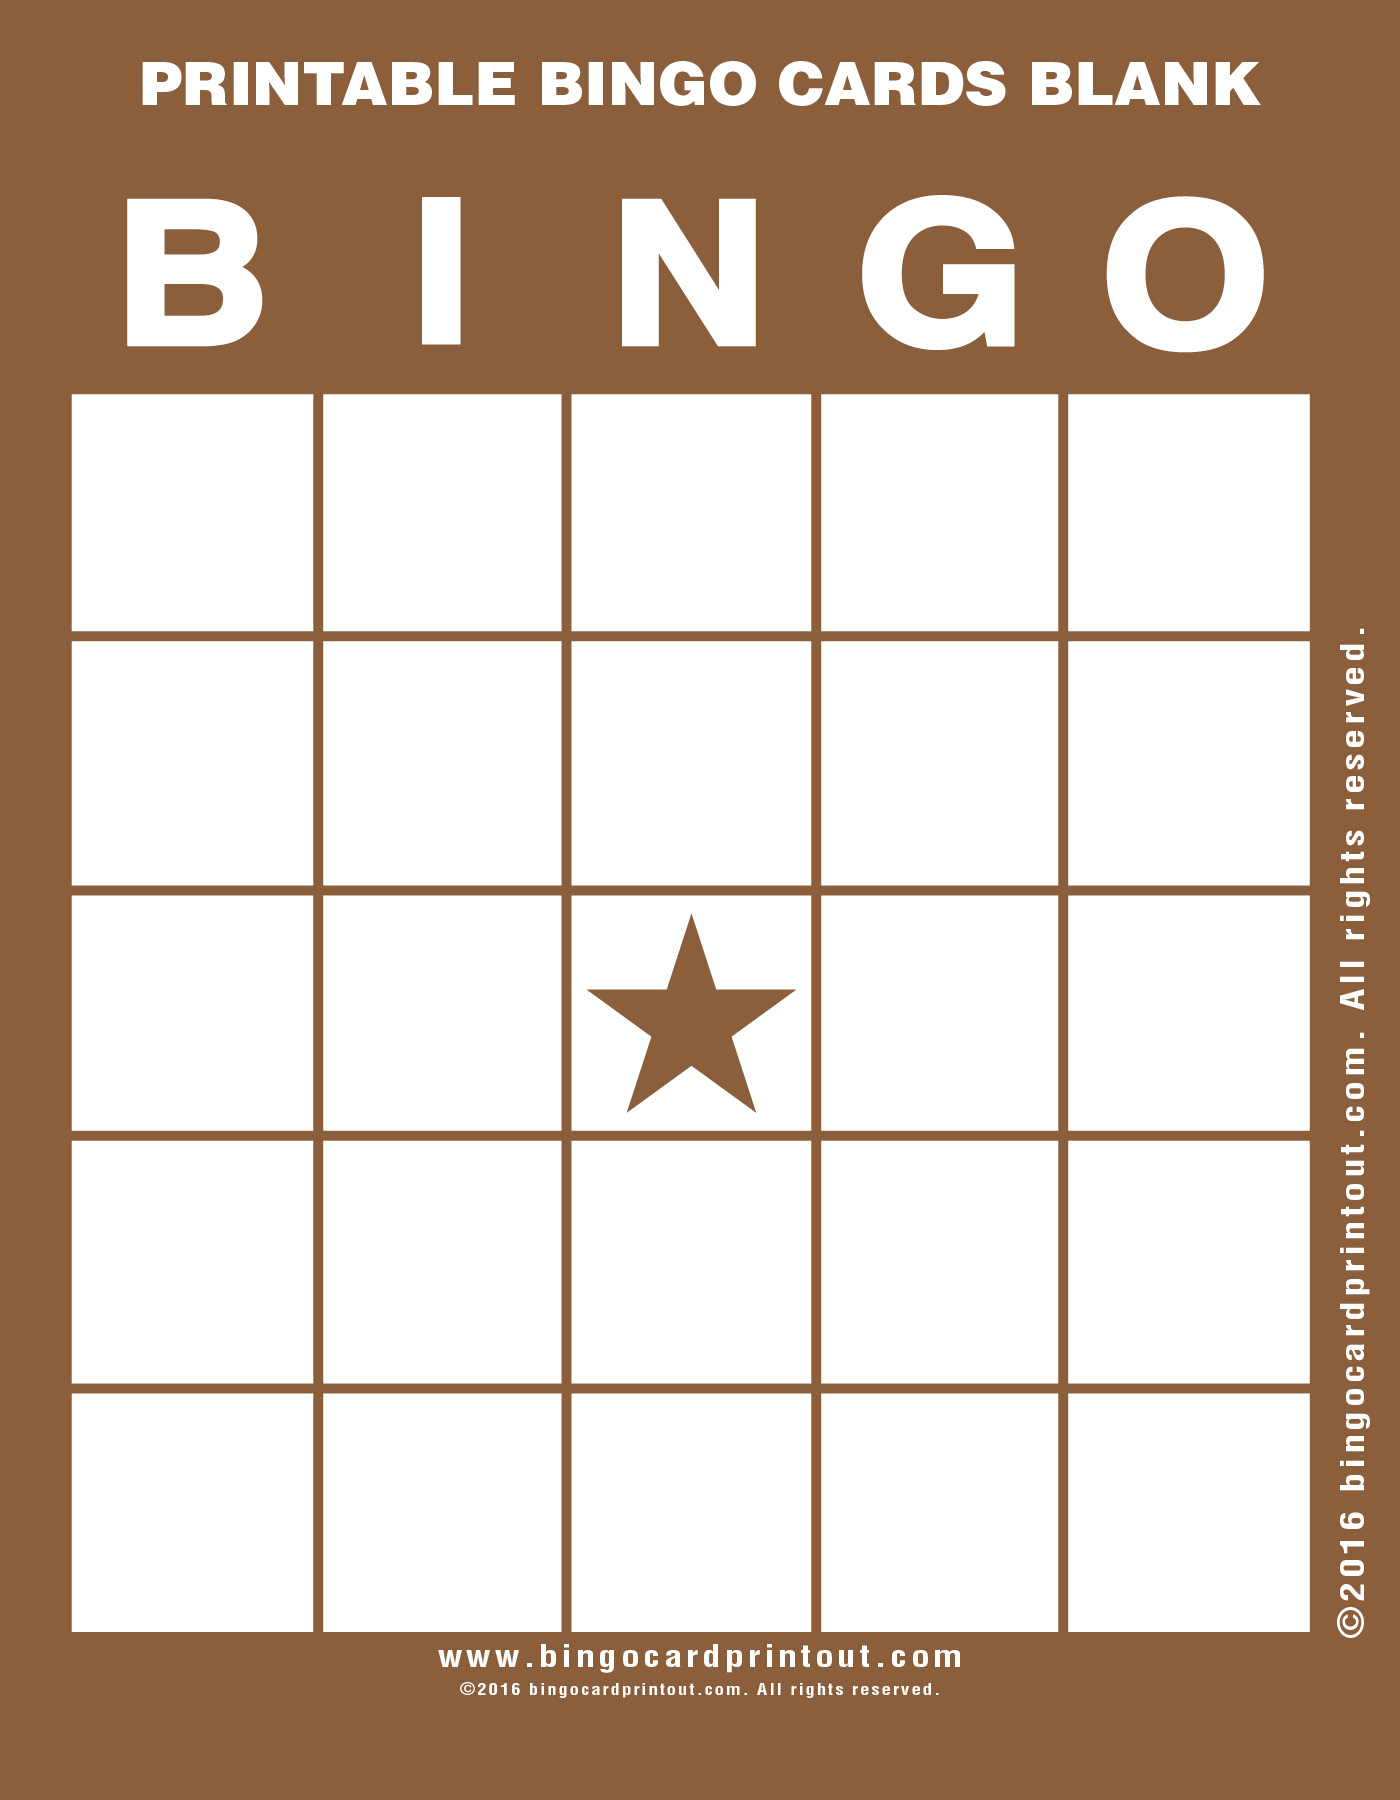 Printable Bingo Cards Blank - Bingocardprintout